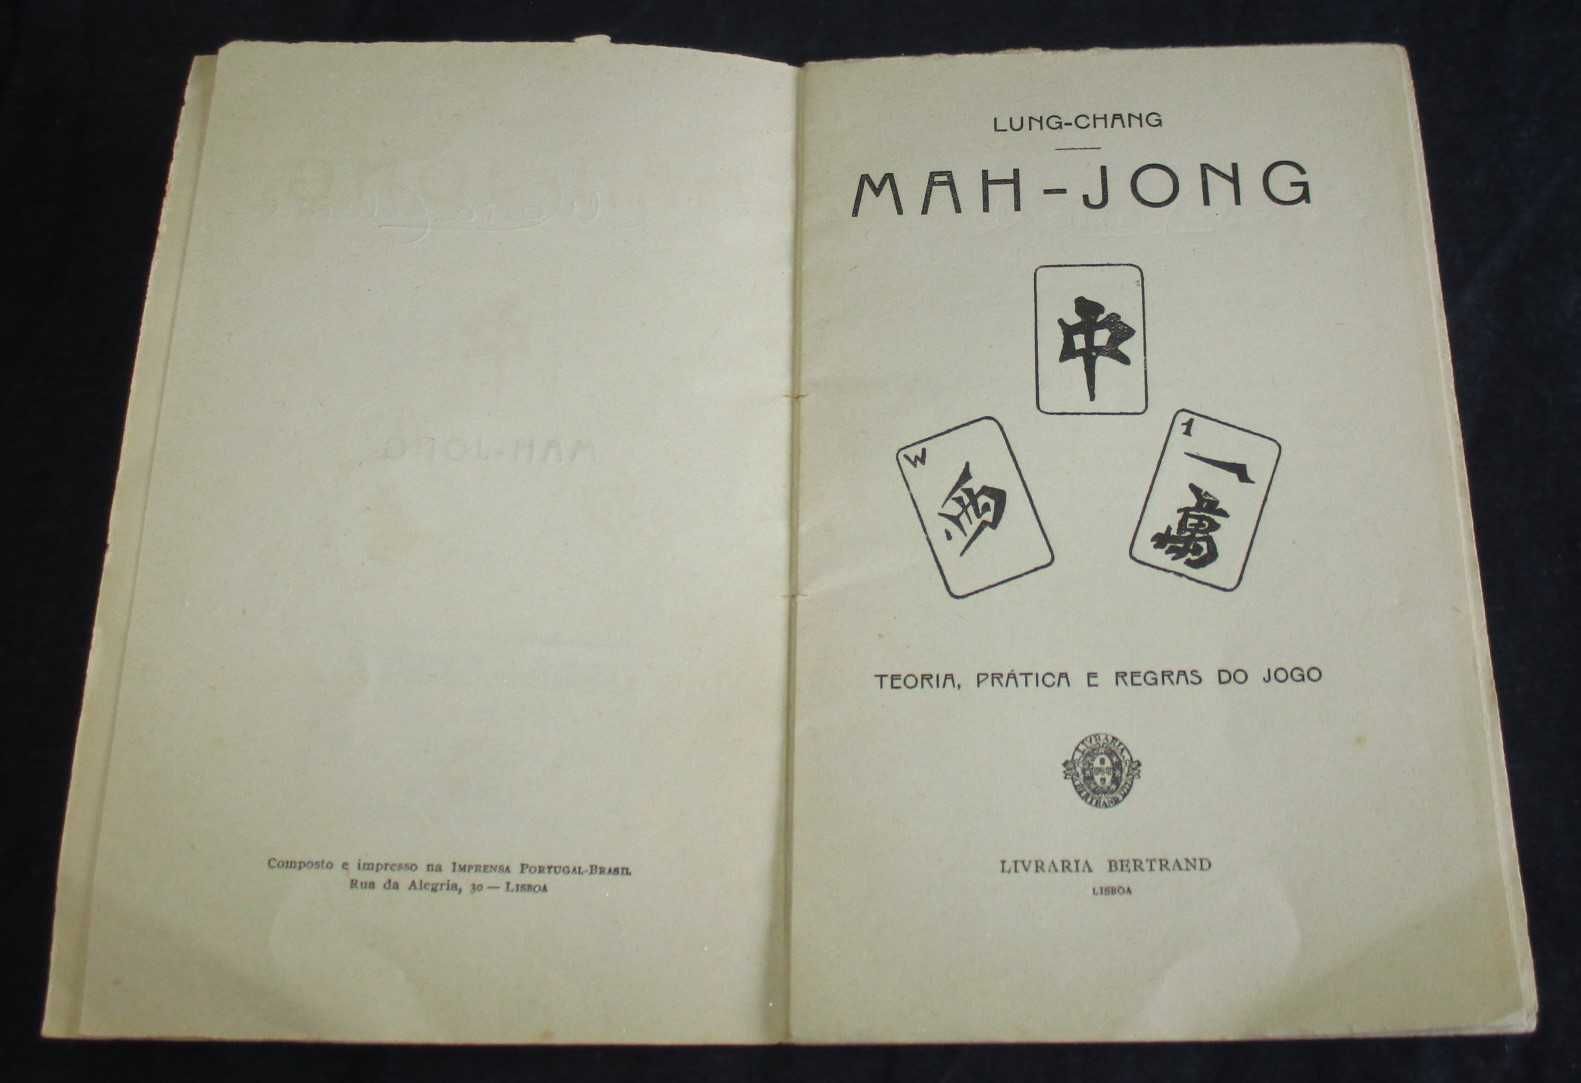 Livro Mah-Jong Teoria Prática e Regras do Jogo Lung-Chang